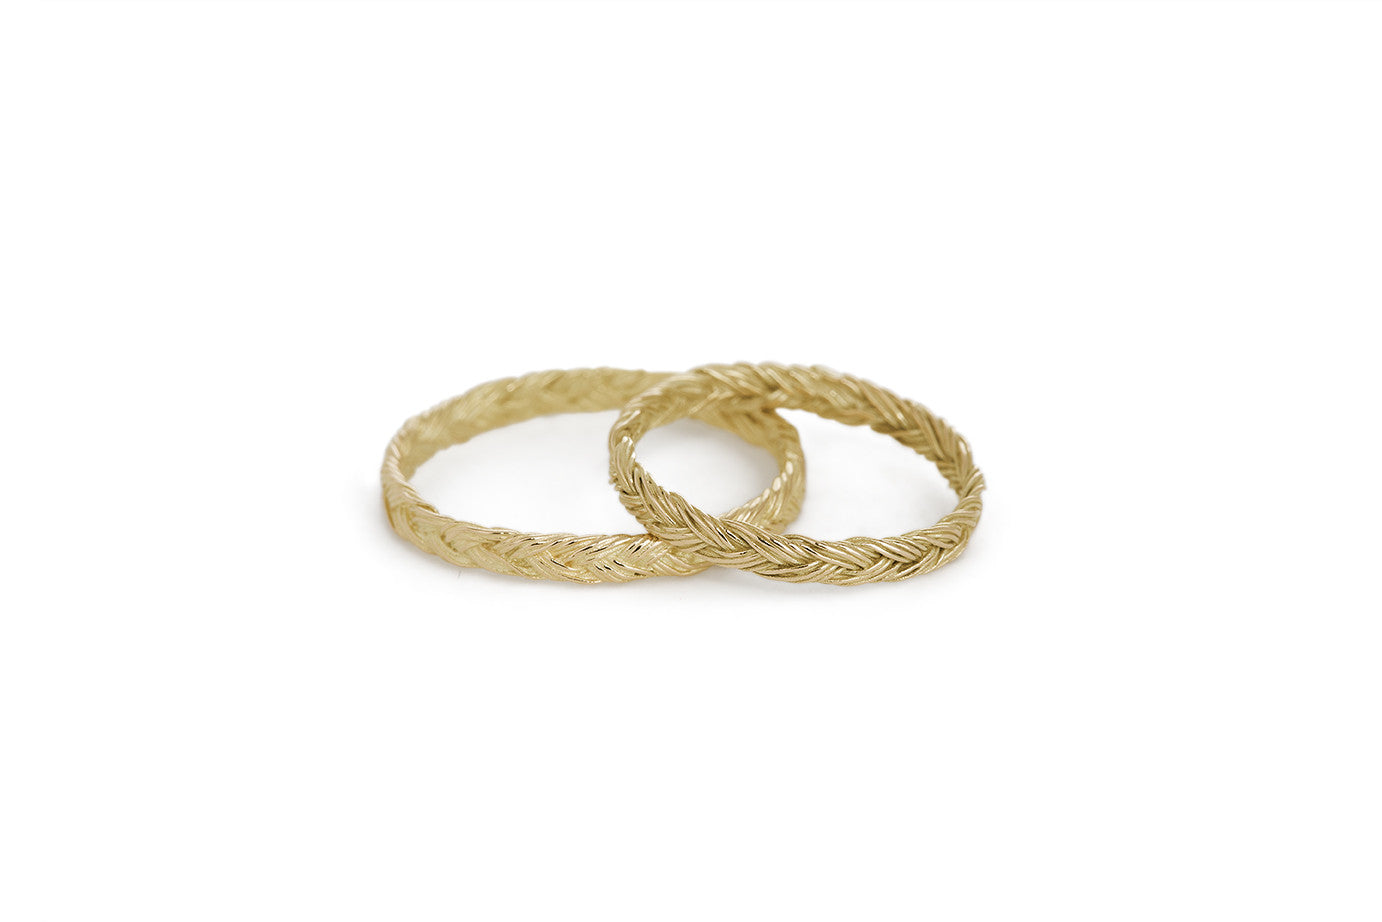 Braid Wedding Ring - Gold flat braid